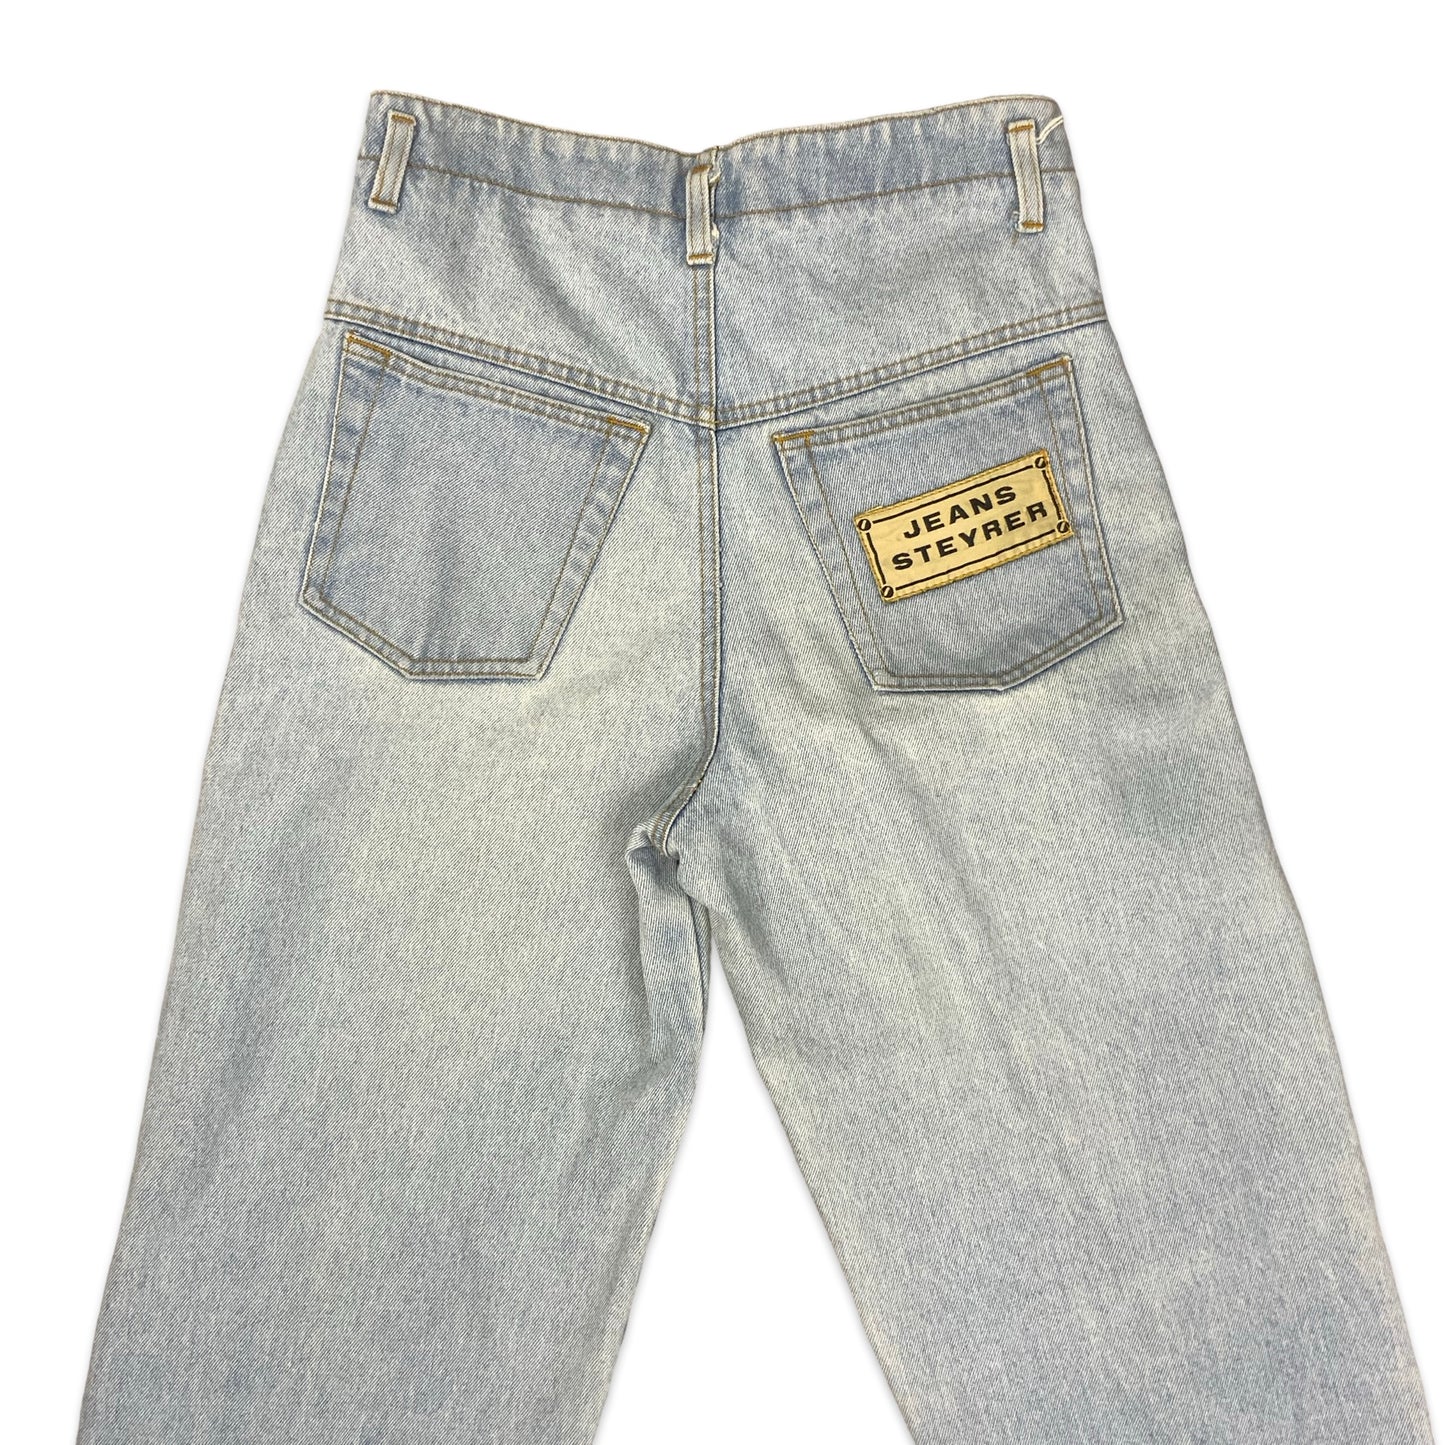 80s High Waist Light Denim Jeans 10